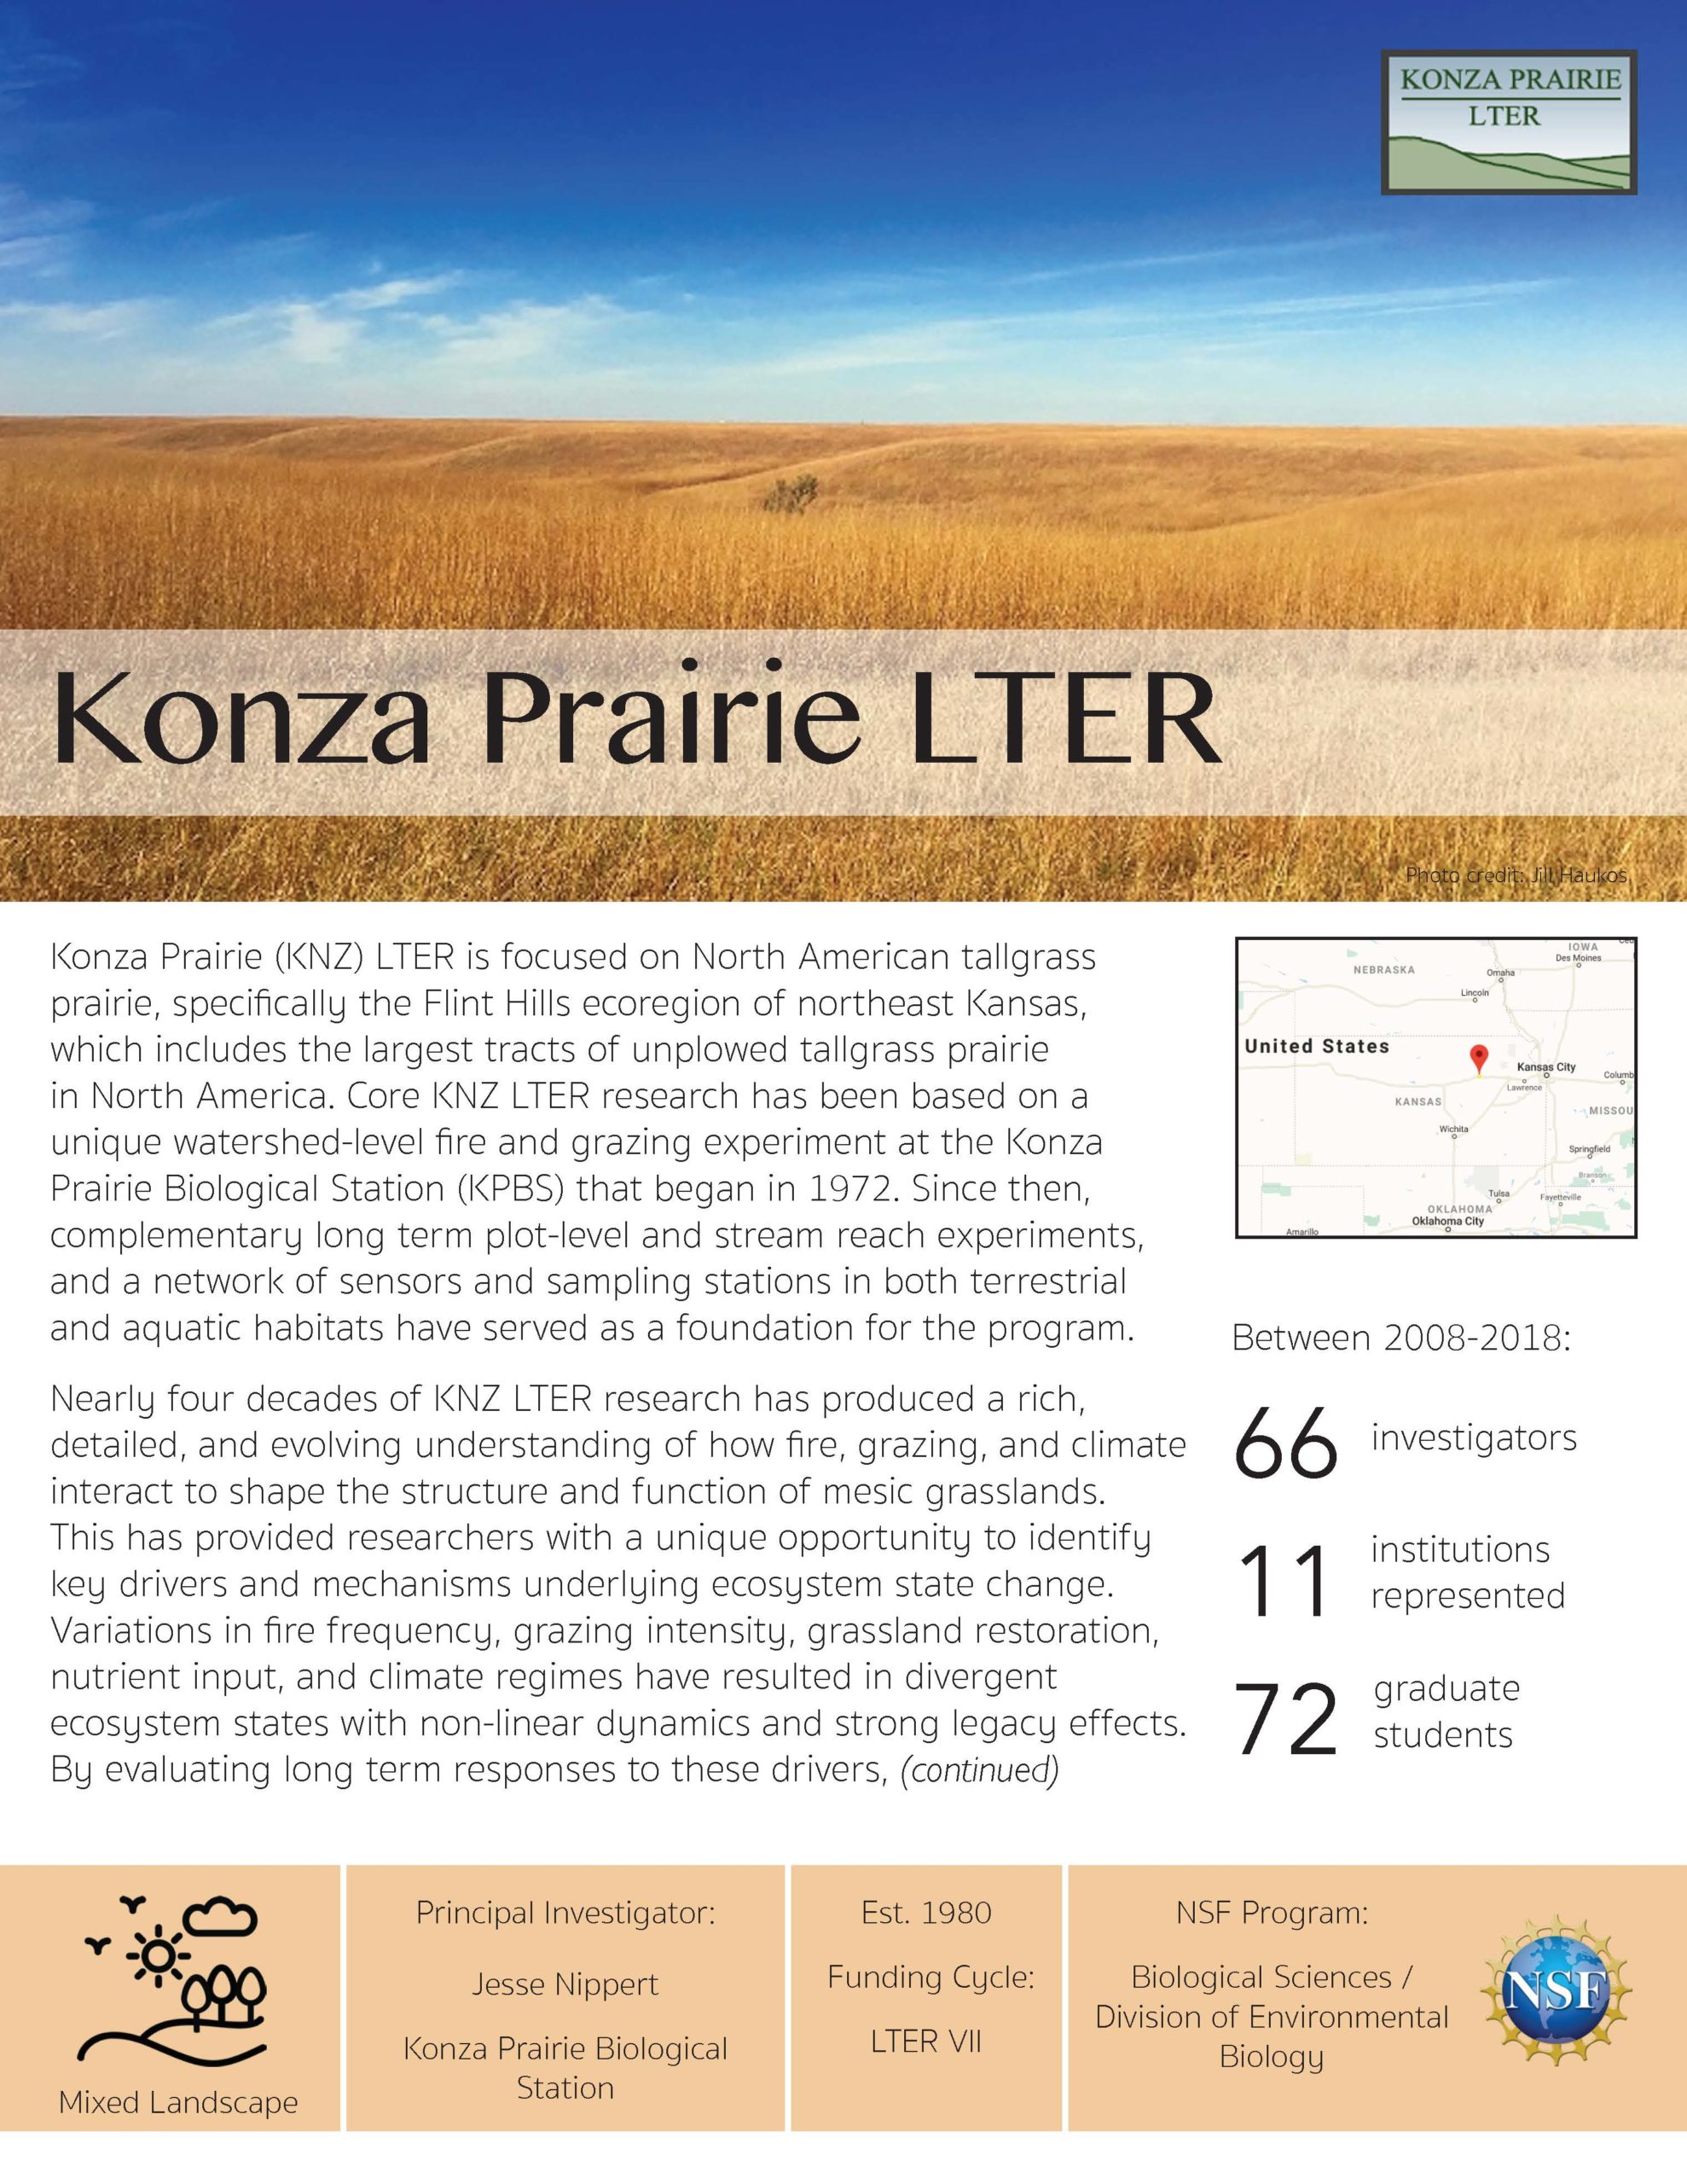 Konza Prairie LTER site brief 2019